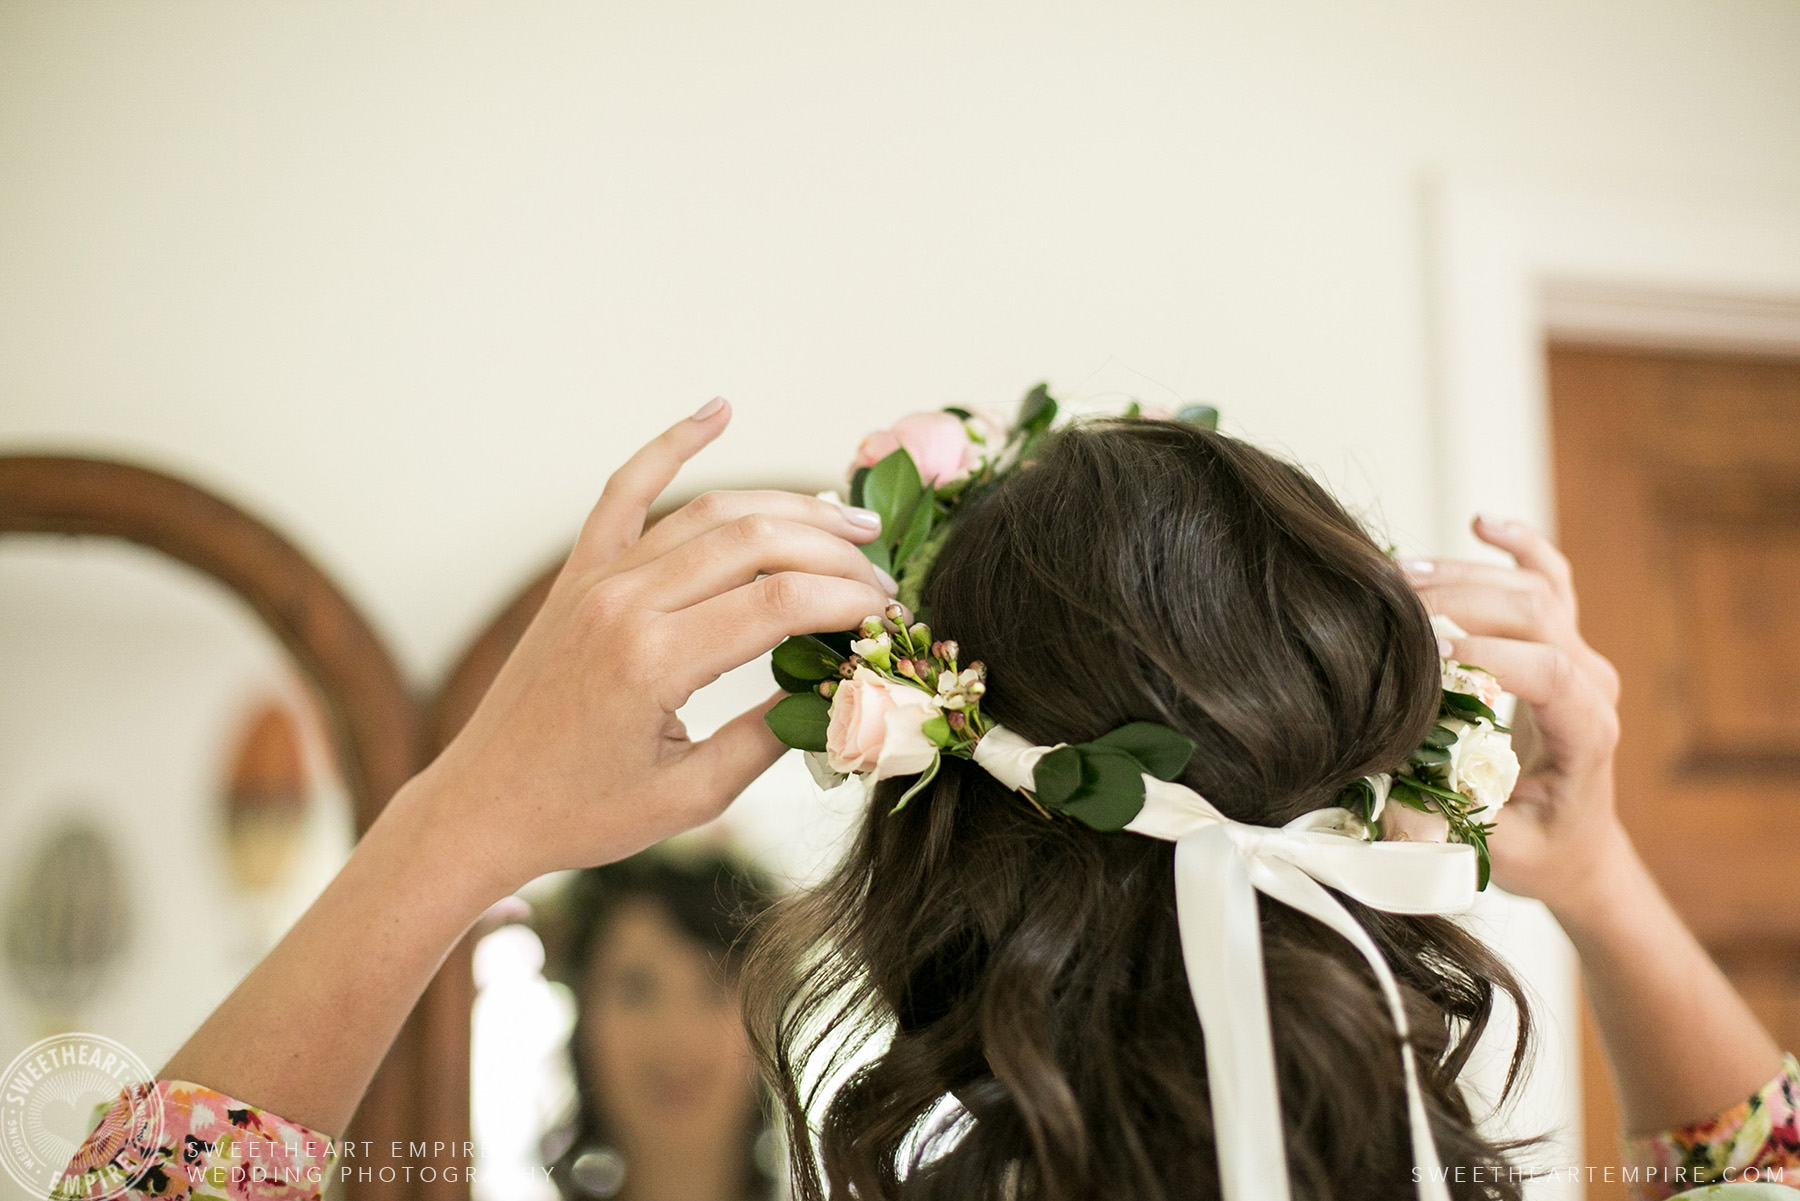 Bride adjusting her floral crown, Toronto Island Elopement